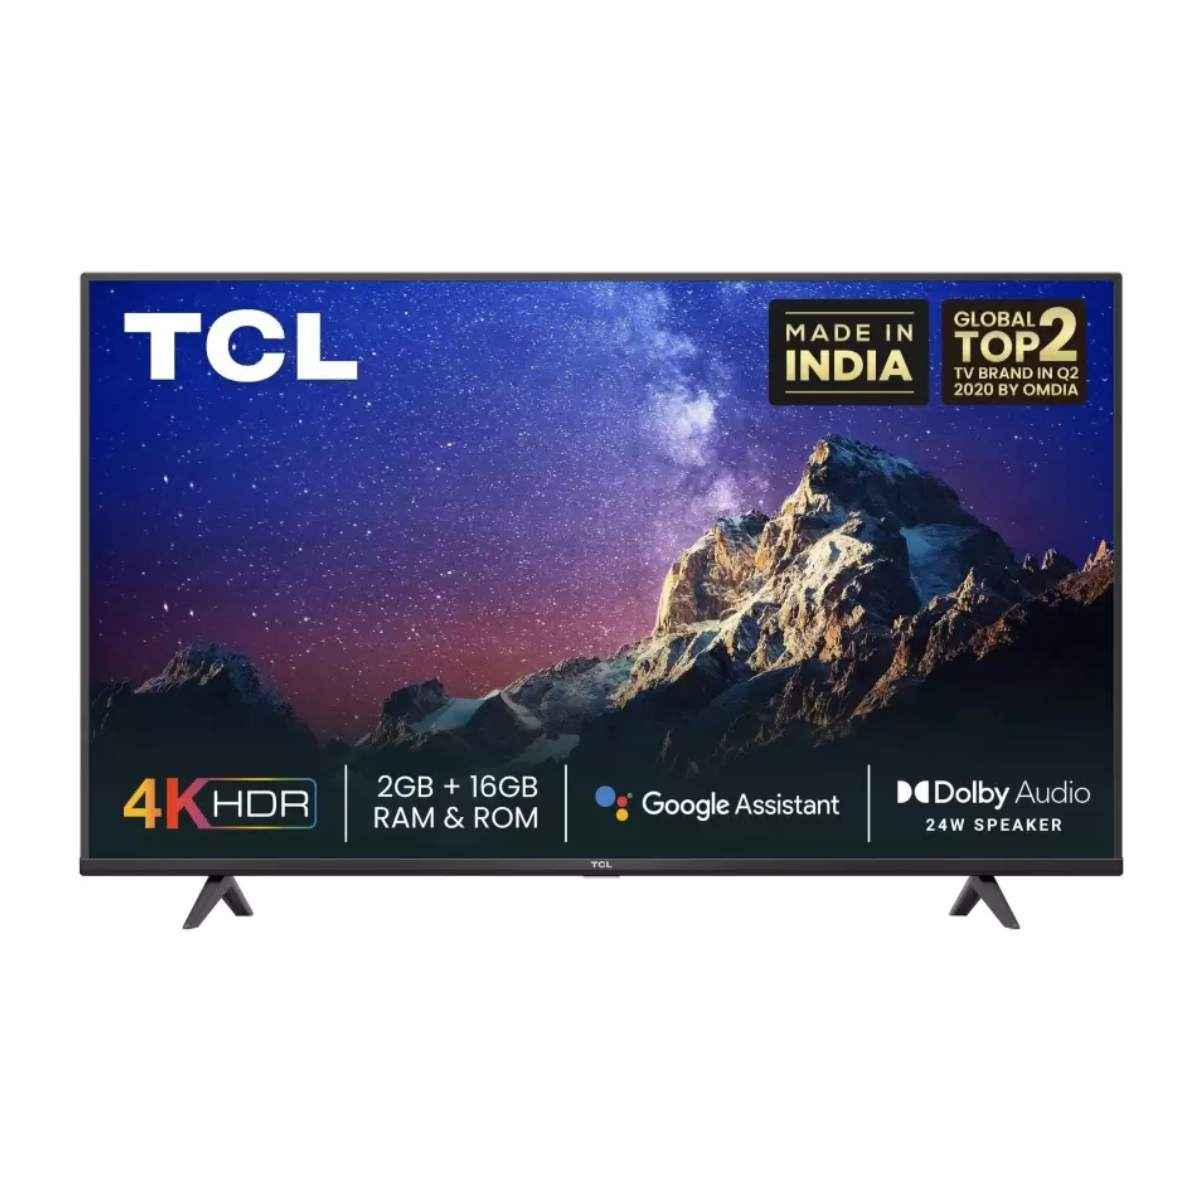 TCL P615 75 inch 4K LED TV